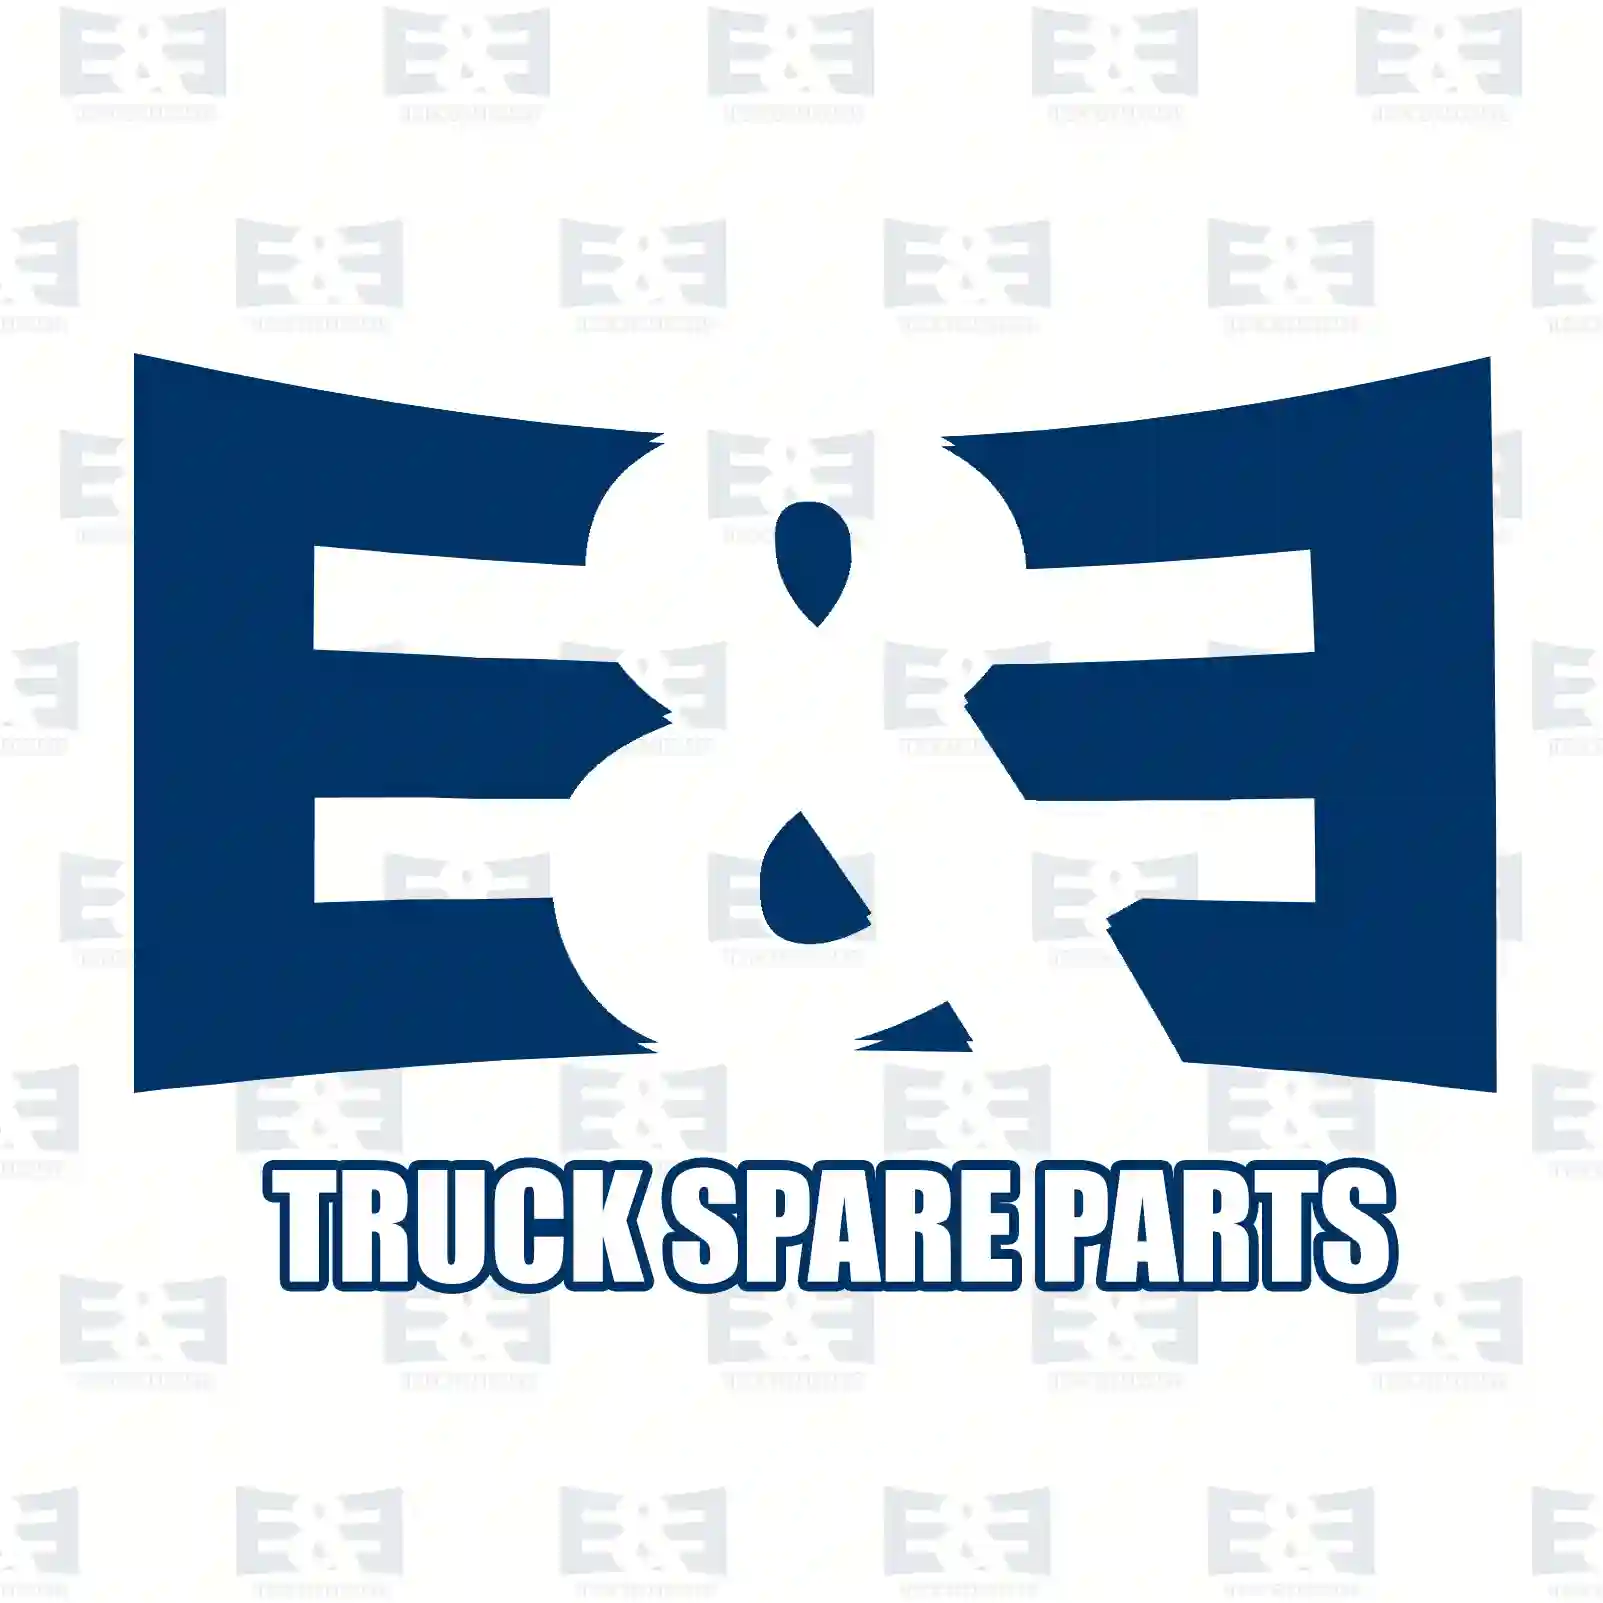 Radiator, exhaust gas recirculation, 2E2206568, 51081007048S, 51081007060S, 51081007063S ||  2E2206568 E&E Truck Spare Parts | Truck Spare Parts, Auotomotive Spare Parts Radiator, exhaust gas recirculation, 2E2206568, 51081007048S, 51081007060S, 51081007063S ||  2E2206568 E&E Truck Spare Parts | Truck Spare Parts, Auotomotive Spare Parts